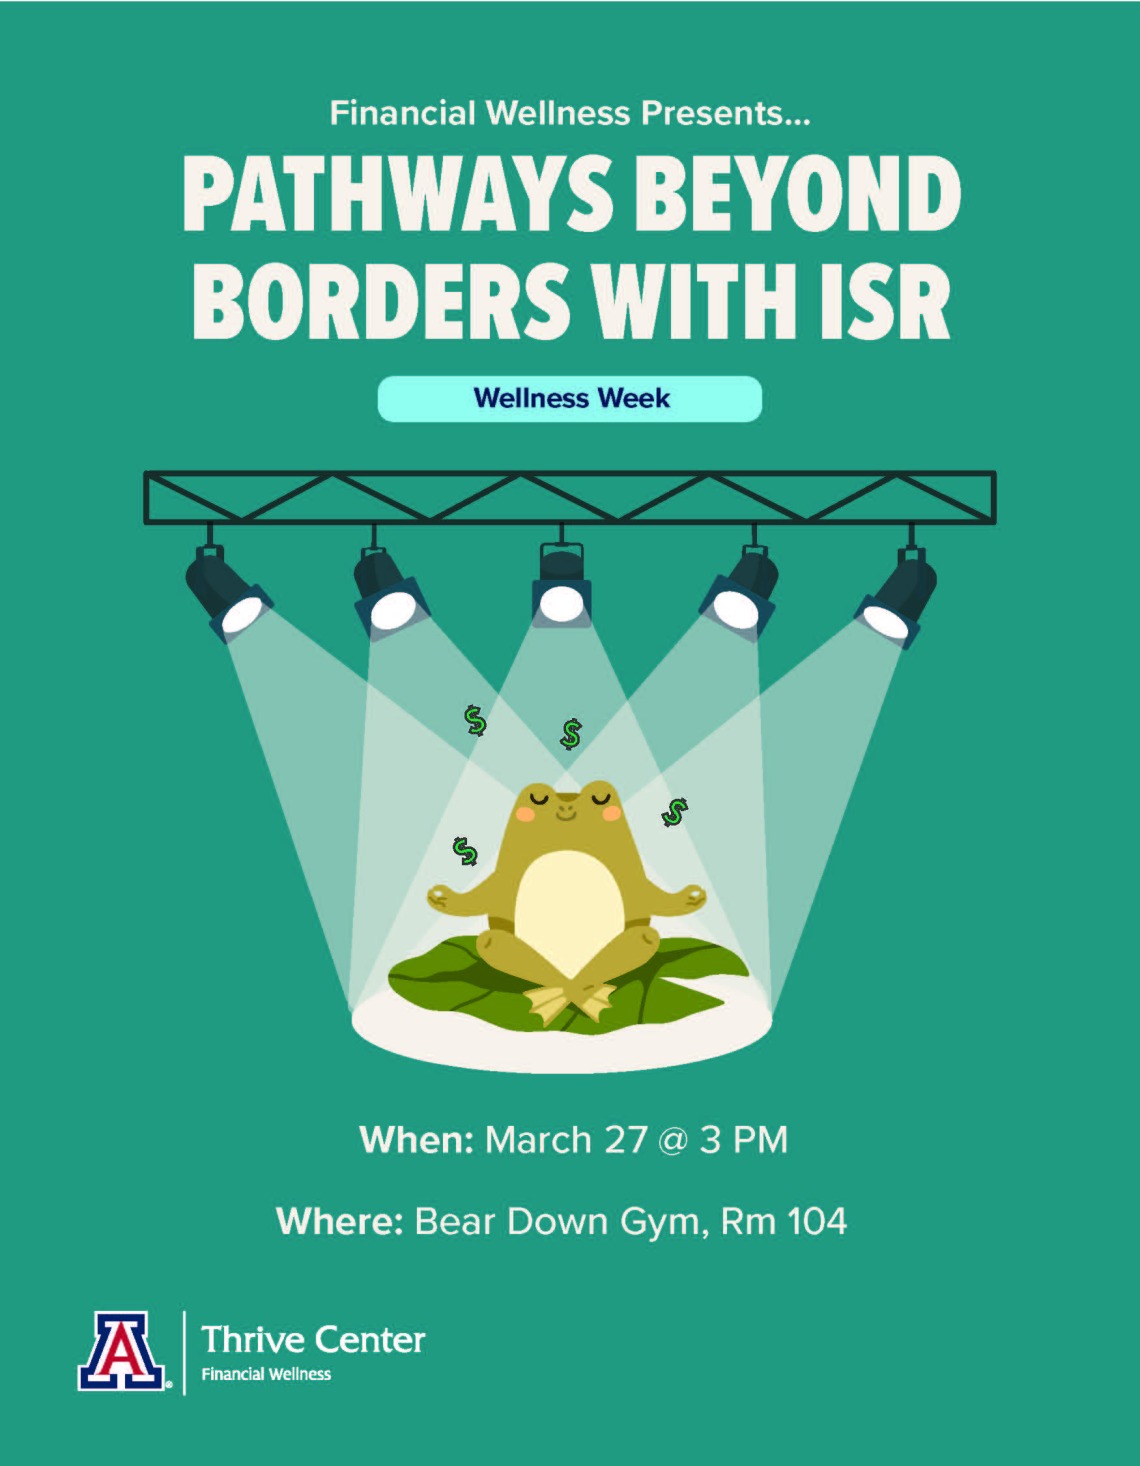 ISR Pathways Beyond Borders